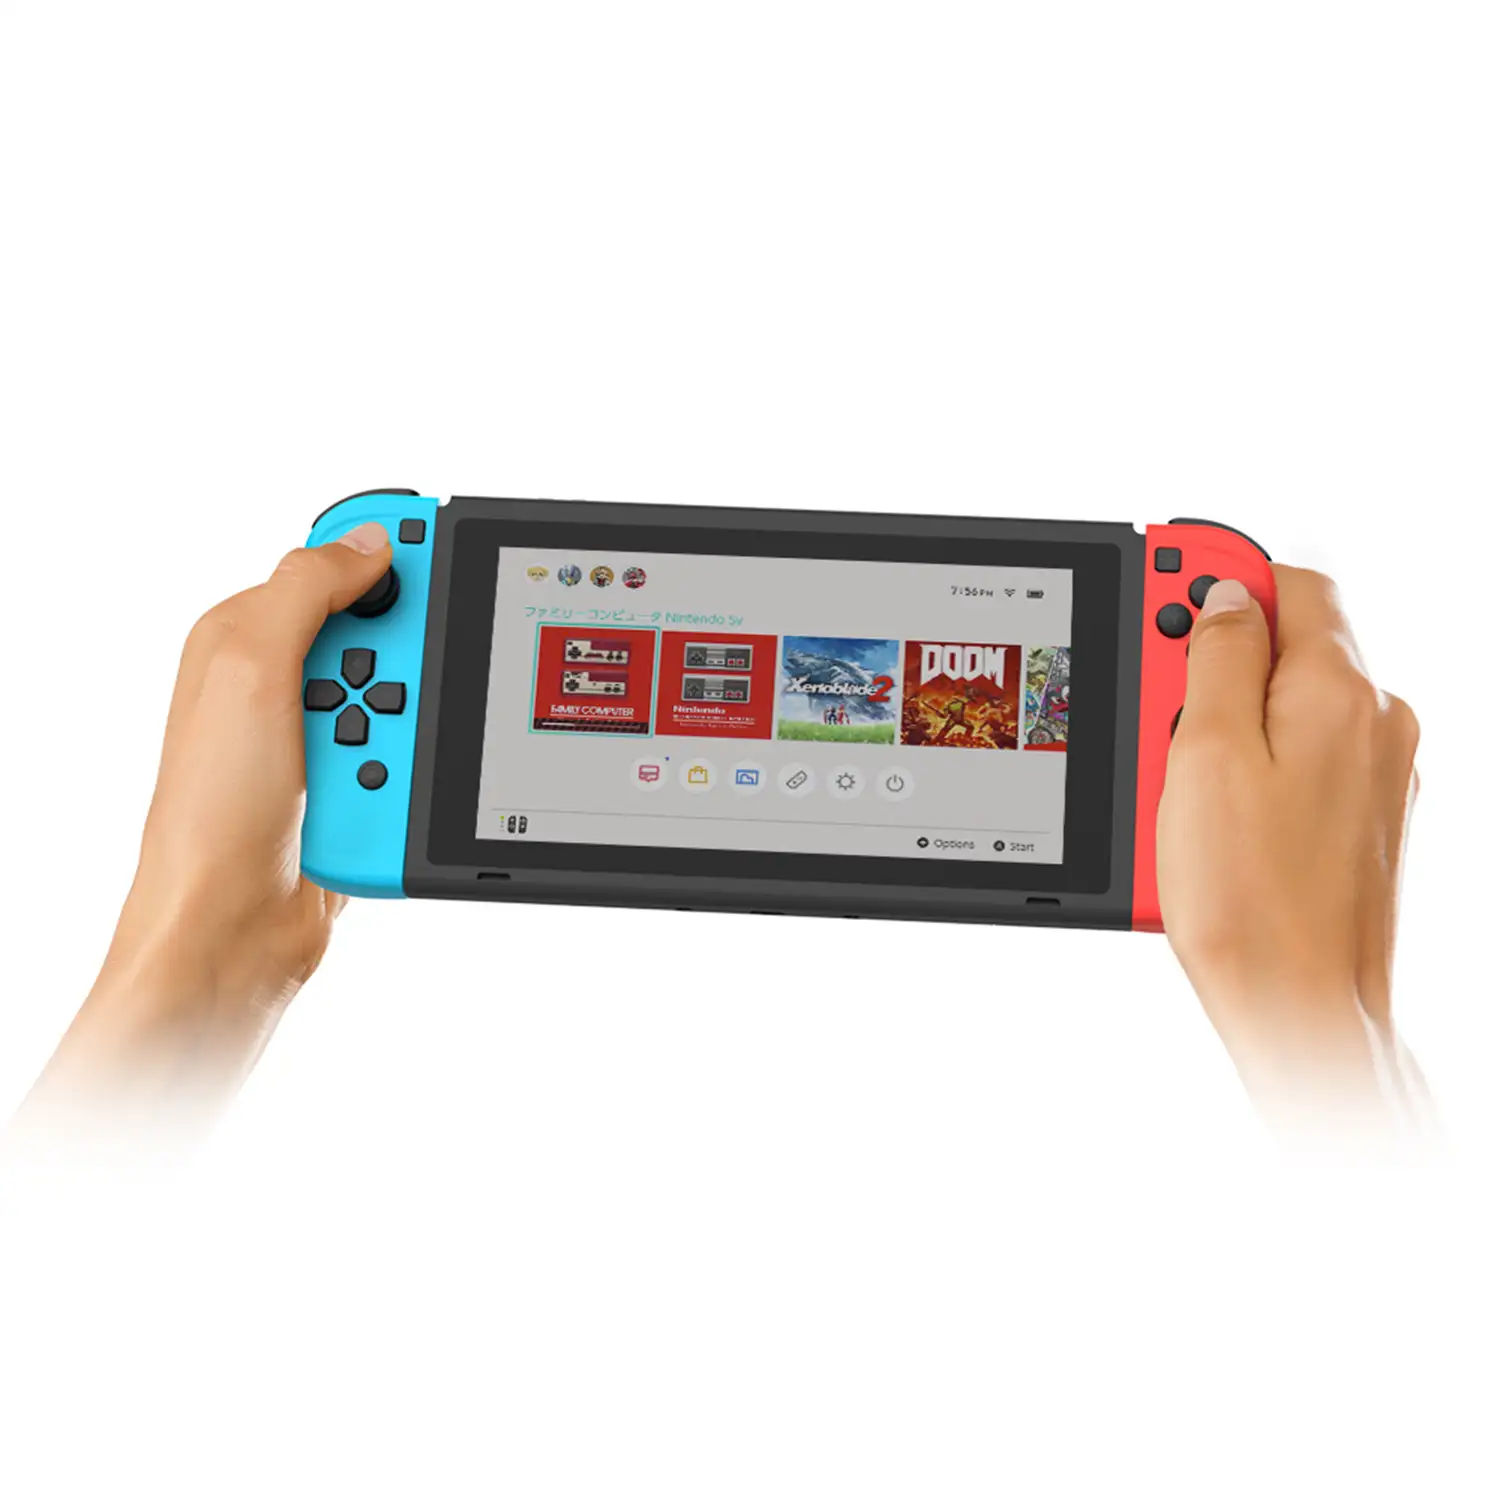 Mandos TNS1810 tipo Joy-Con compatibles con Nintendo Switch.